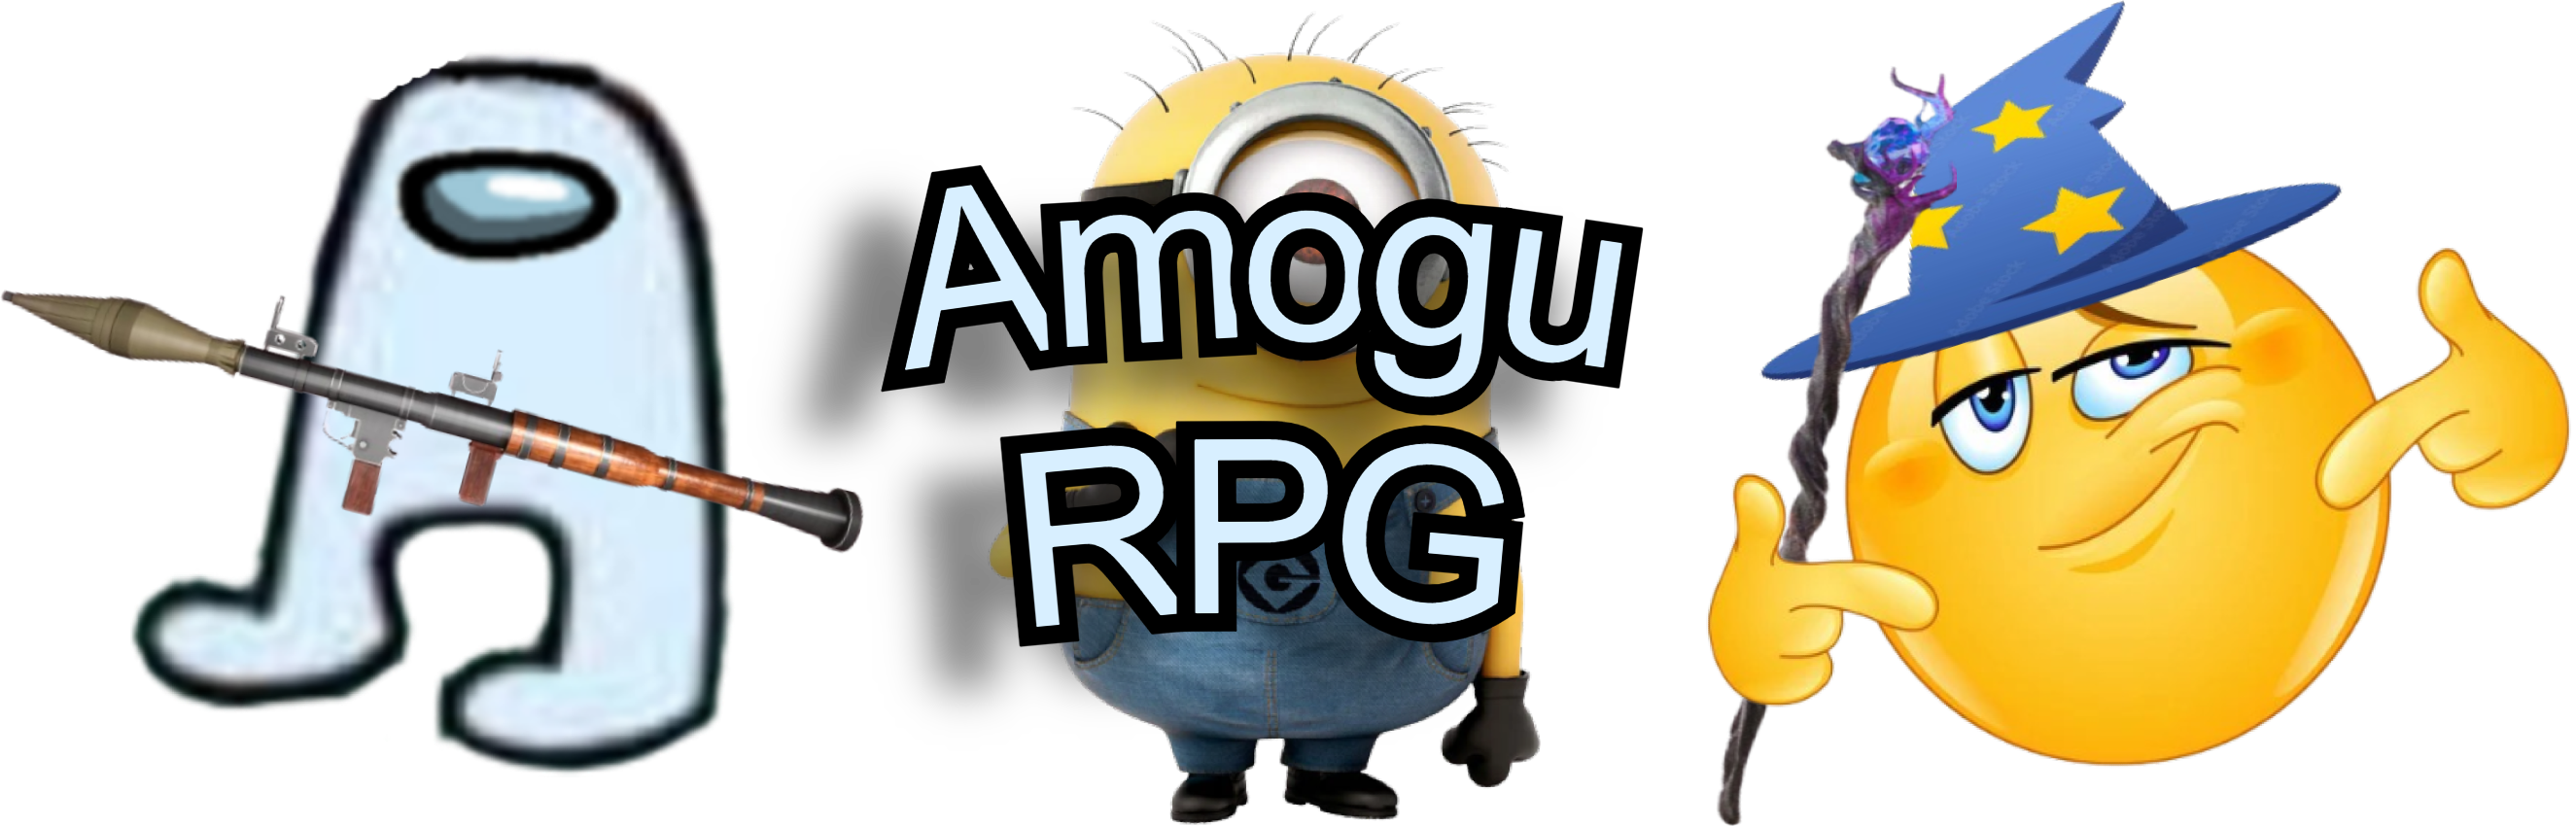 Amogu RPG